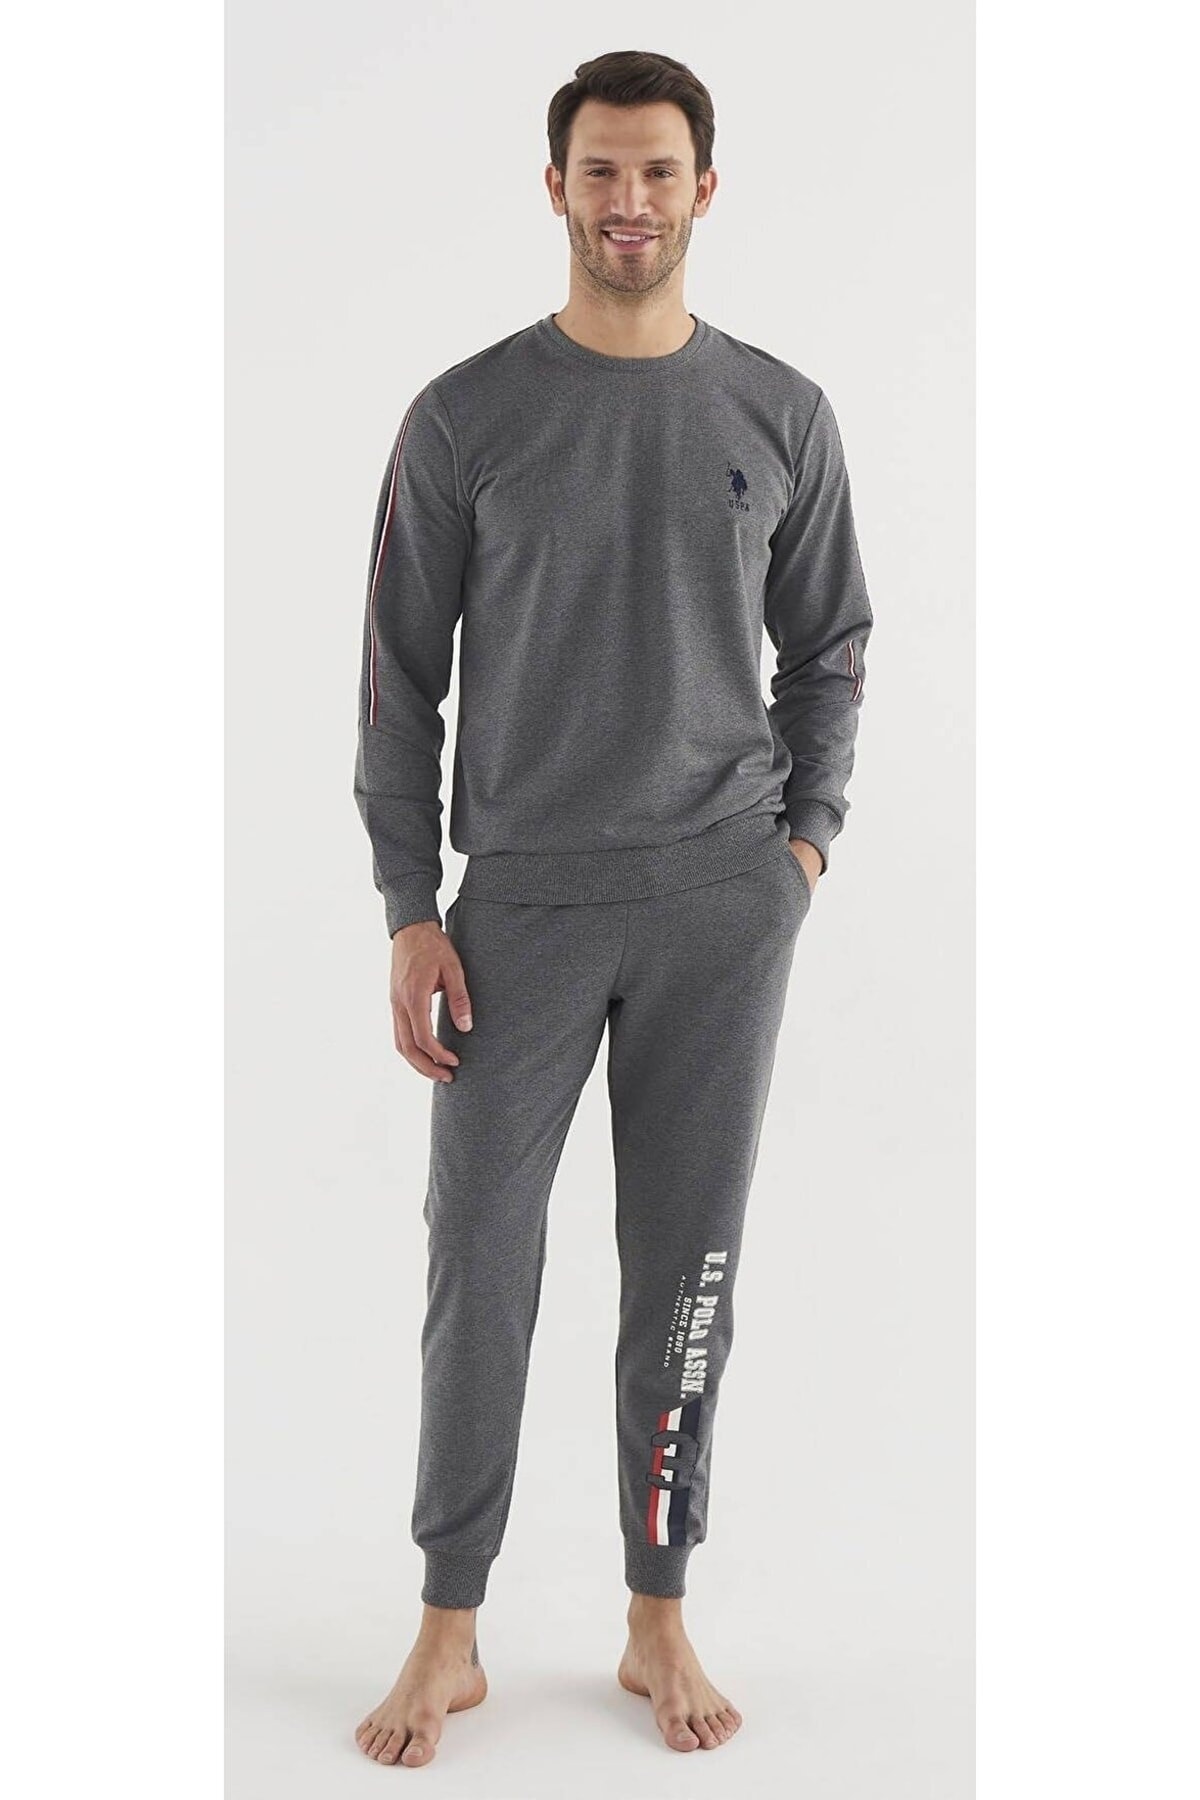 U.S. Polo Assn. Erkek Yazı Baskılı Armalı Spor Ev Giyim Takımı, Uzun Kol Iki Iplik Erkek Pijama Takım